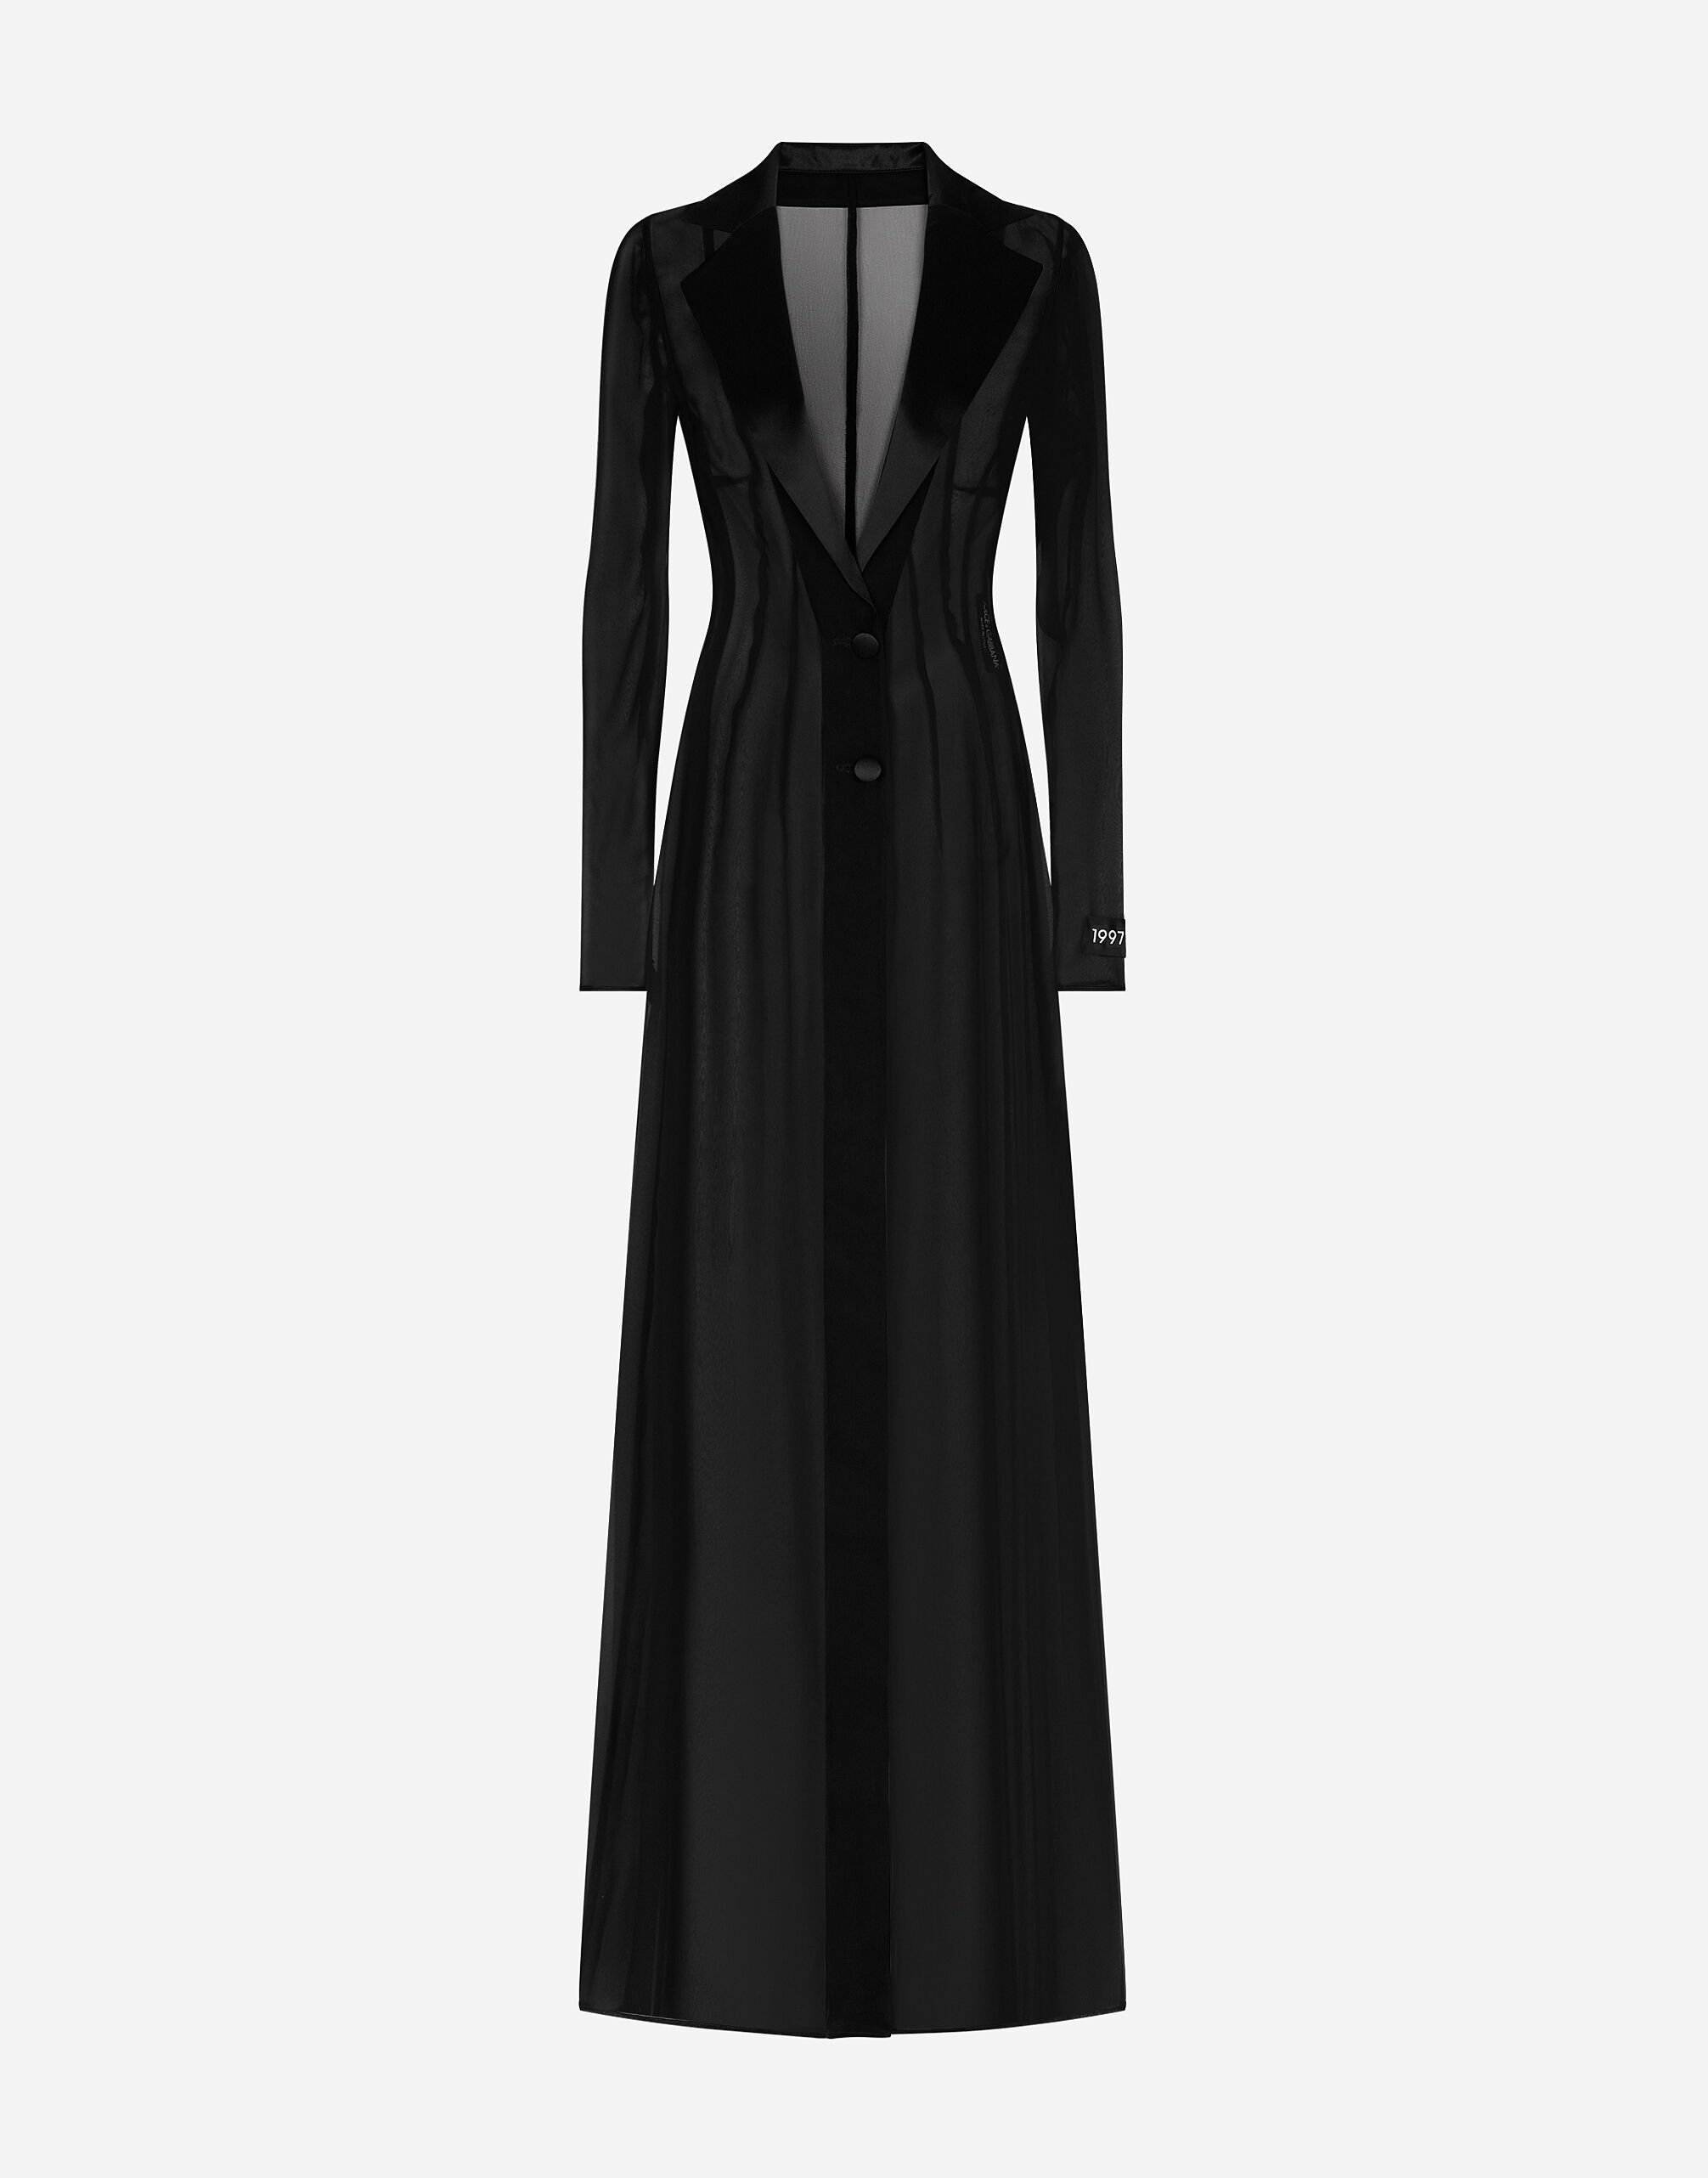 Dolce&Gabbana Silk chiffon duster coat Black F79BRTHLM9K